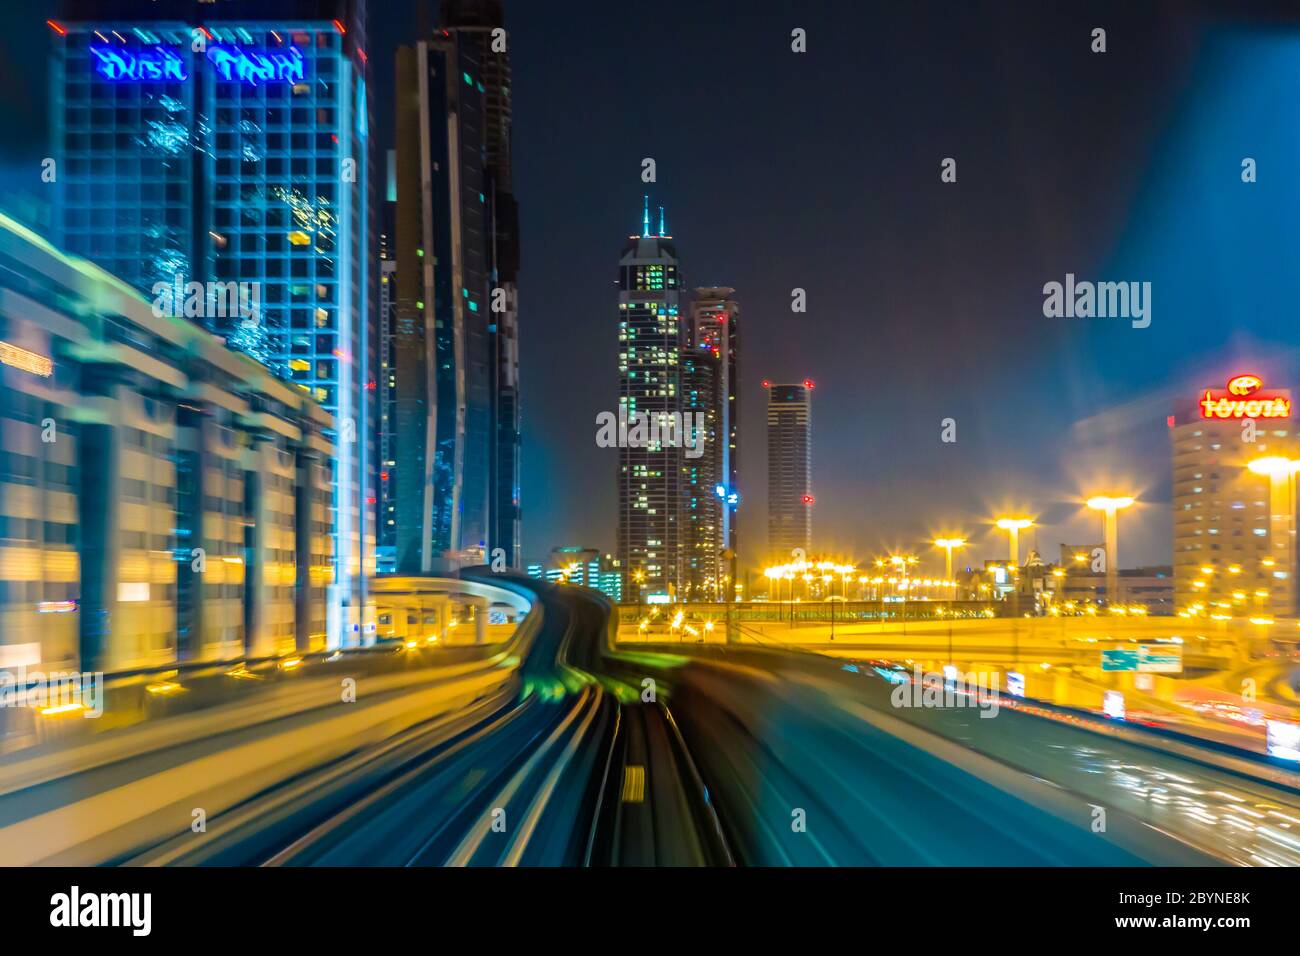 Dubai metro railway in motion blur Stock Photo